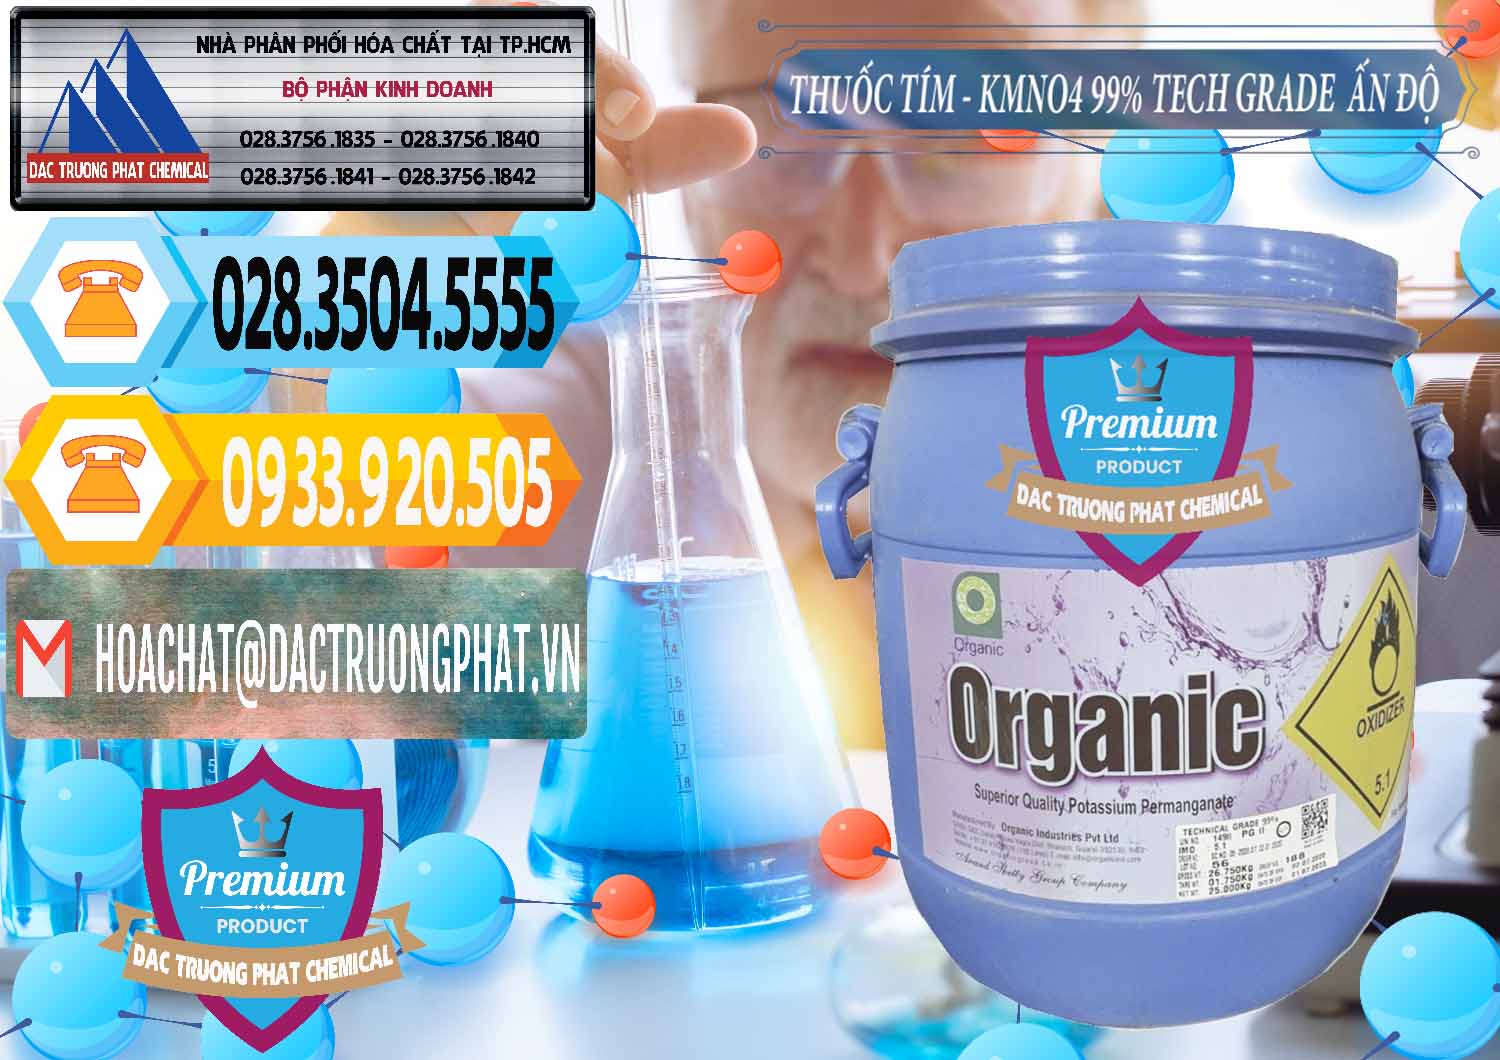 Nơi bán và phân phối Thuốc Tím - KMNO4 99% Organic Group Ấn Độ India - 0250 - Kinh doanh và phân phối hóa chất tại TP.HCM - hoachattayrua.net